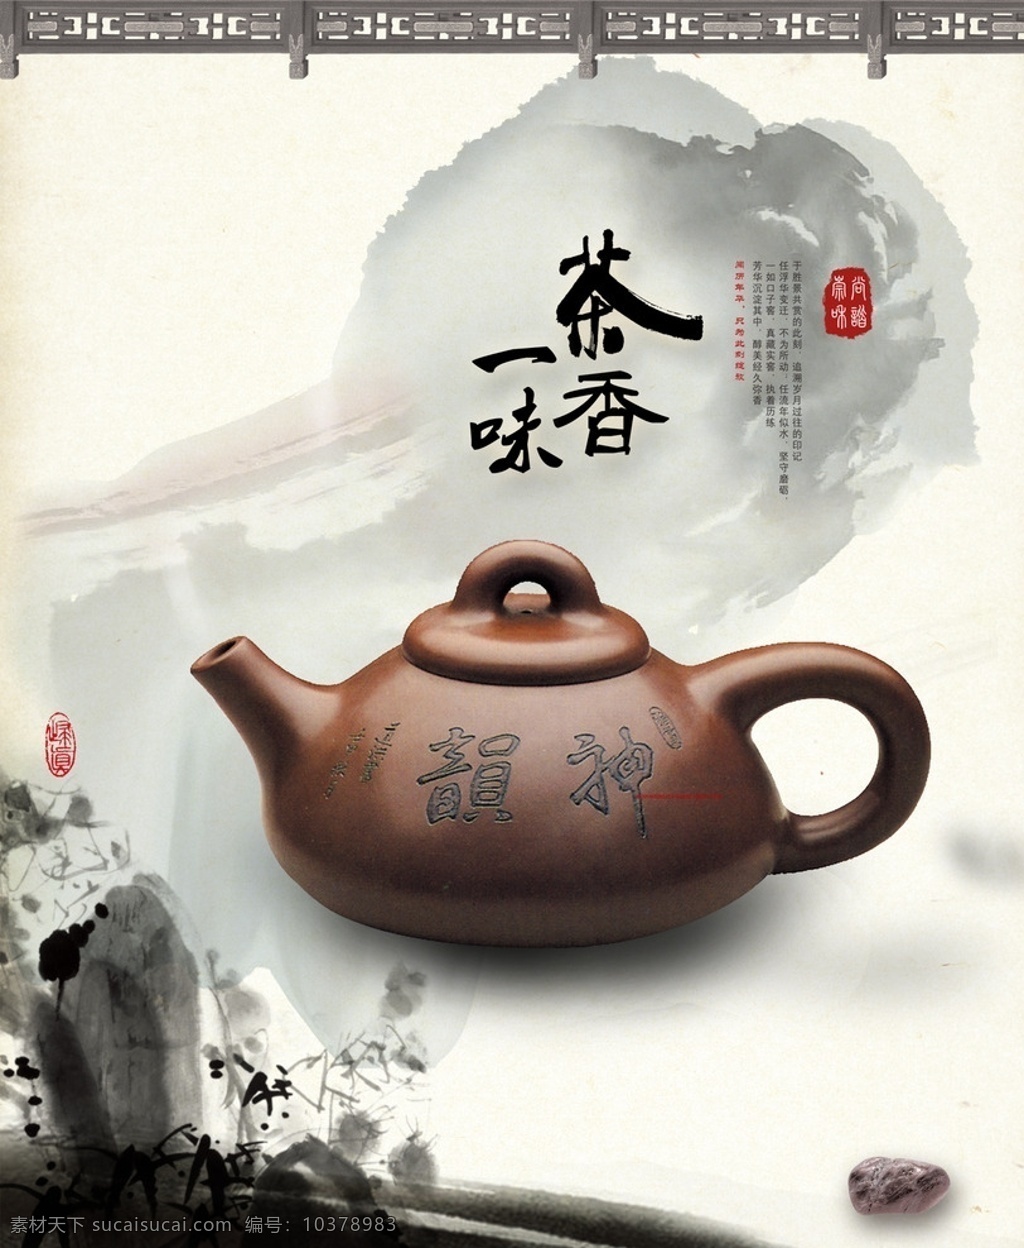 茶海报 茶壶 水墨画 墨迹墨点 茶香一味 站长 之家 共享 文化艺术 传统文化